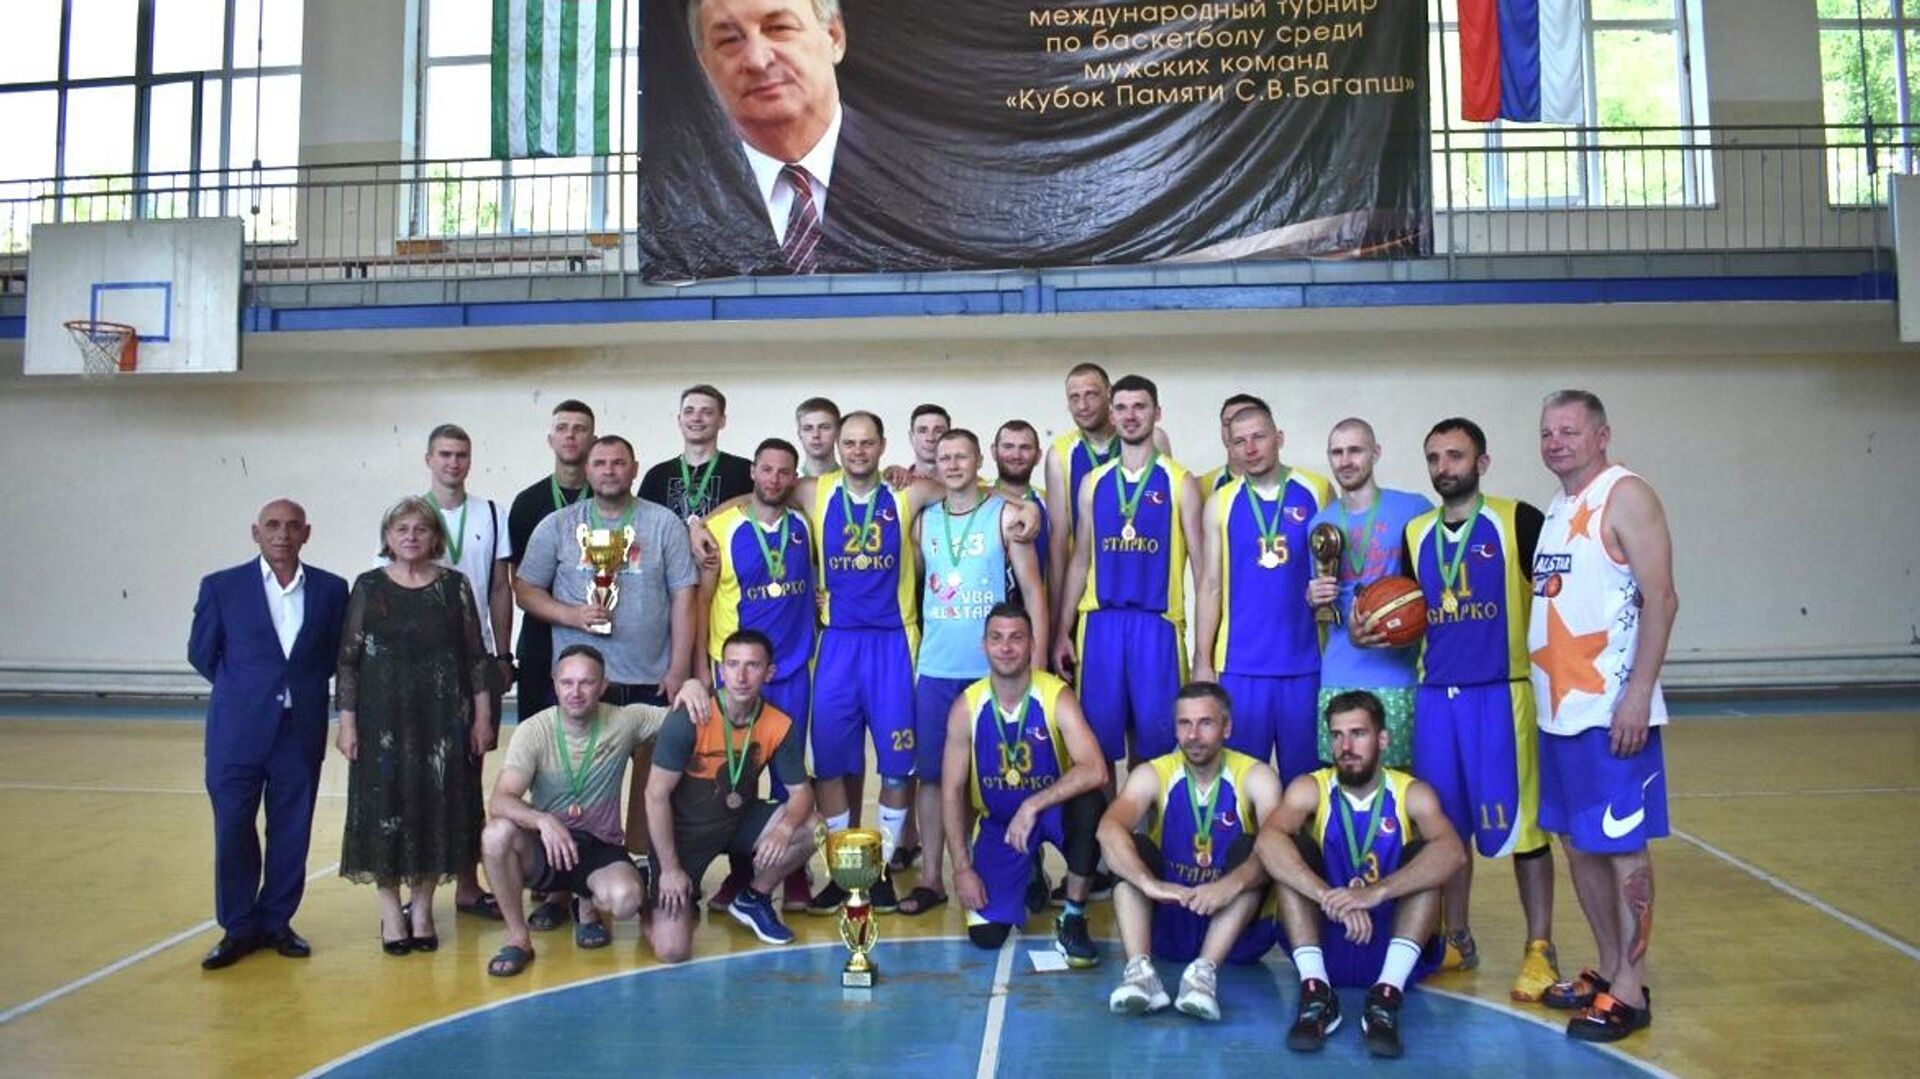 Команда из города Шахты стала победителем международного турнира по баскетболуКубок памяти Сергея Багапш - Sputnik Абхазия, 1920, 06.07.2022